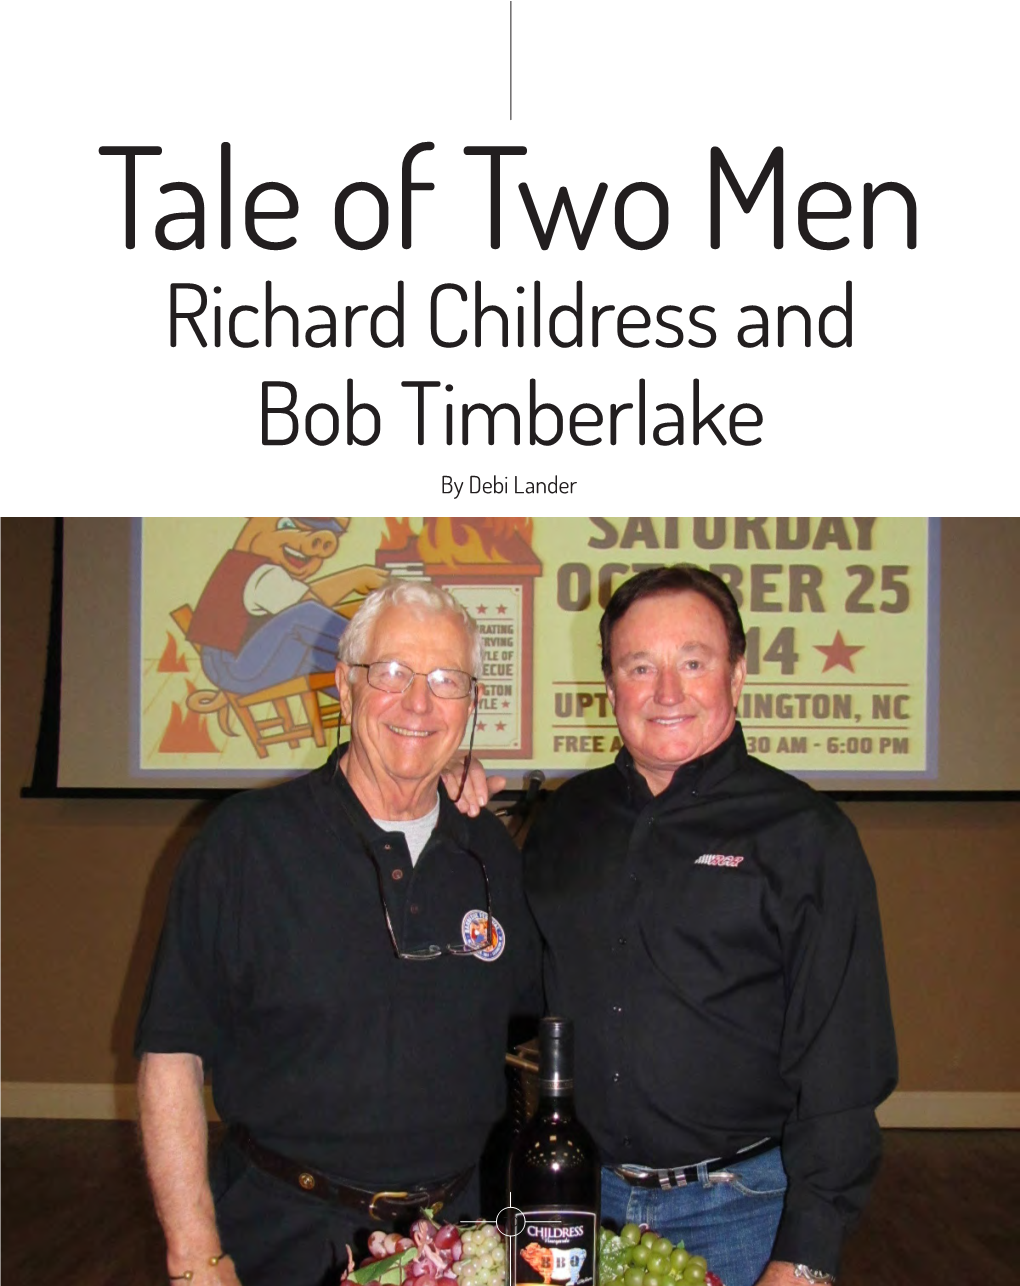 Richard Childress and Bob Timberlake Ress and Rlake